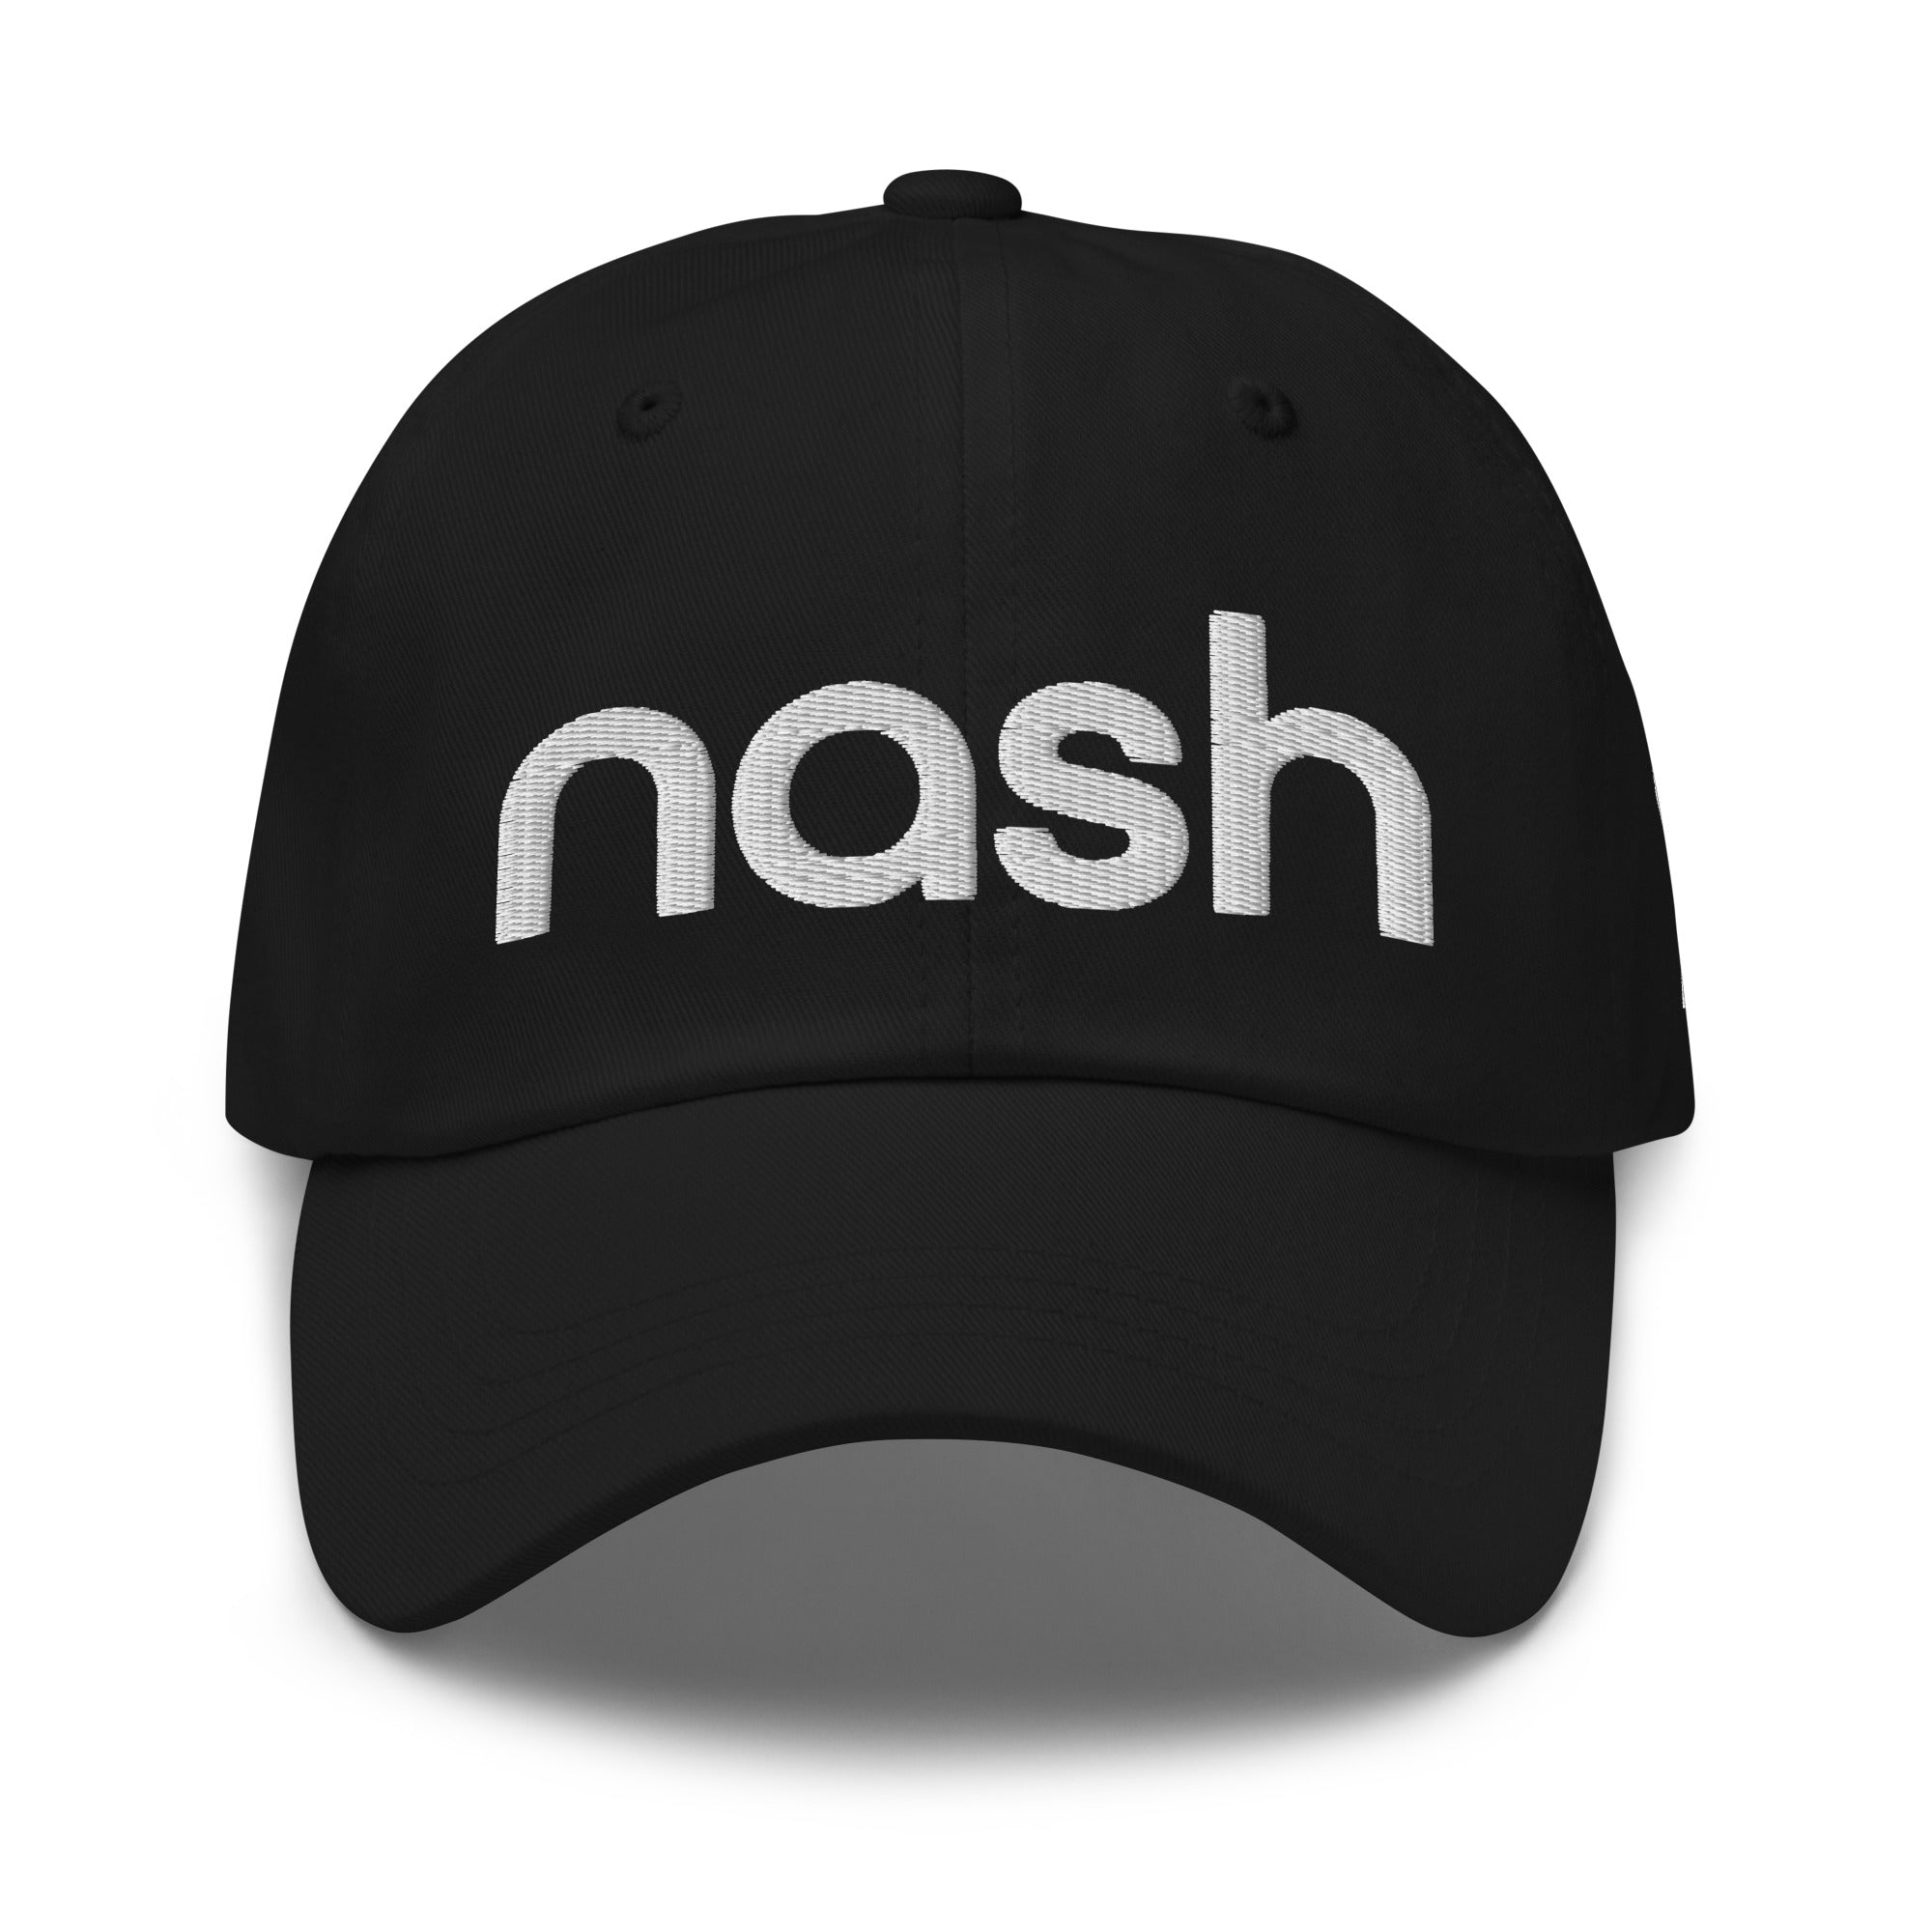 Nash TN 3d puff Embroidered Dad hat, Nashville, Tennessee, White Thread, Nash Hat